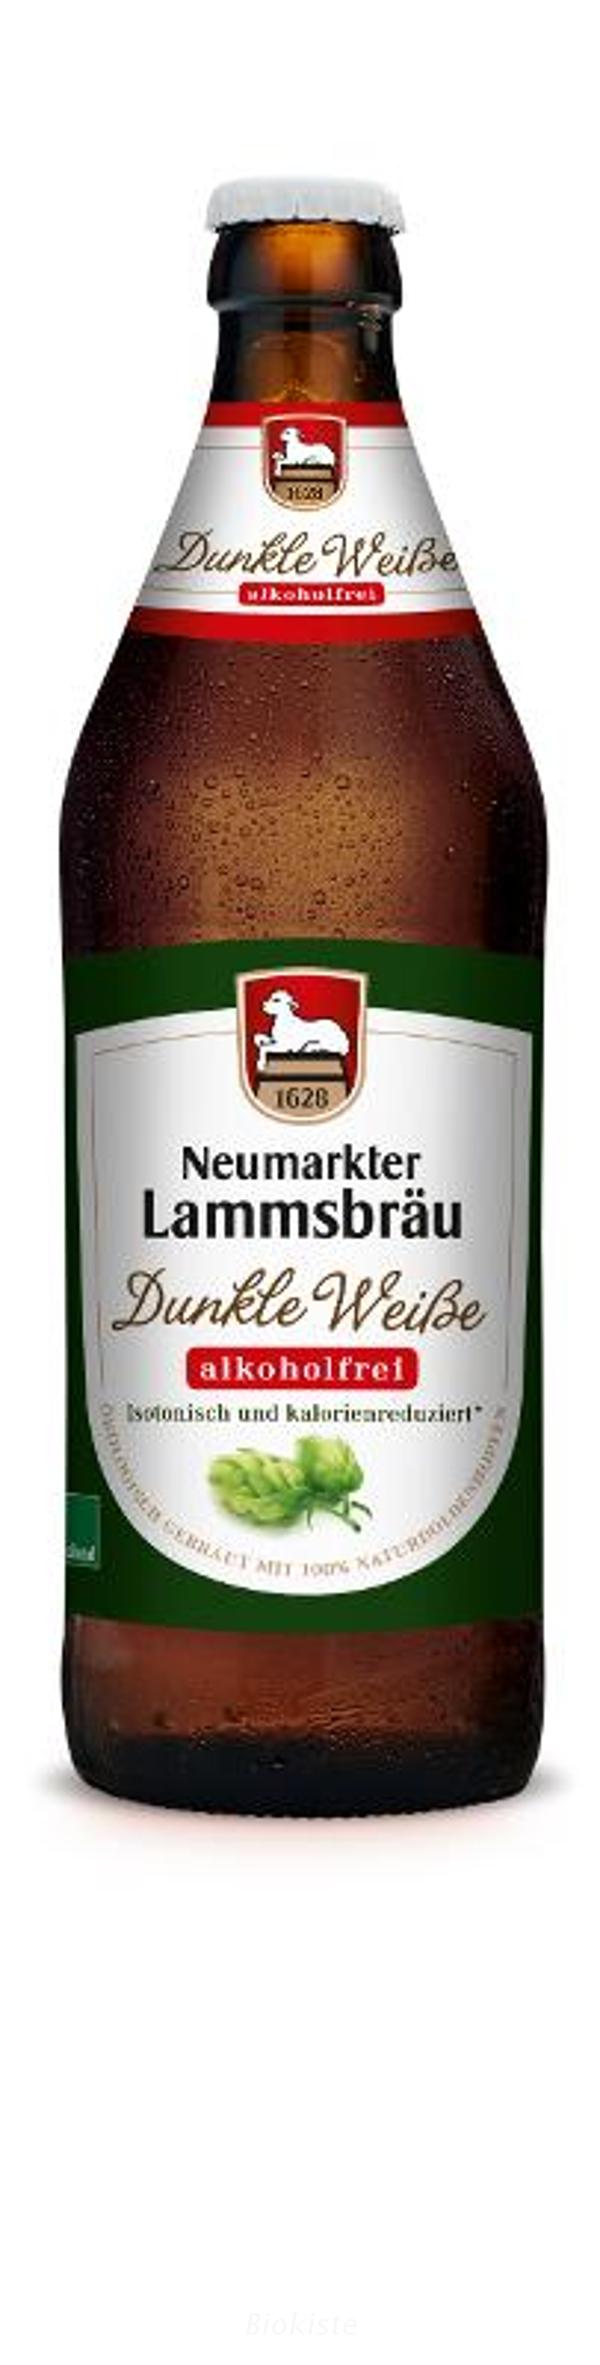 Produktfoto zu Lammsbräu Dunkle Weiße alkoholfrei